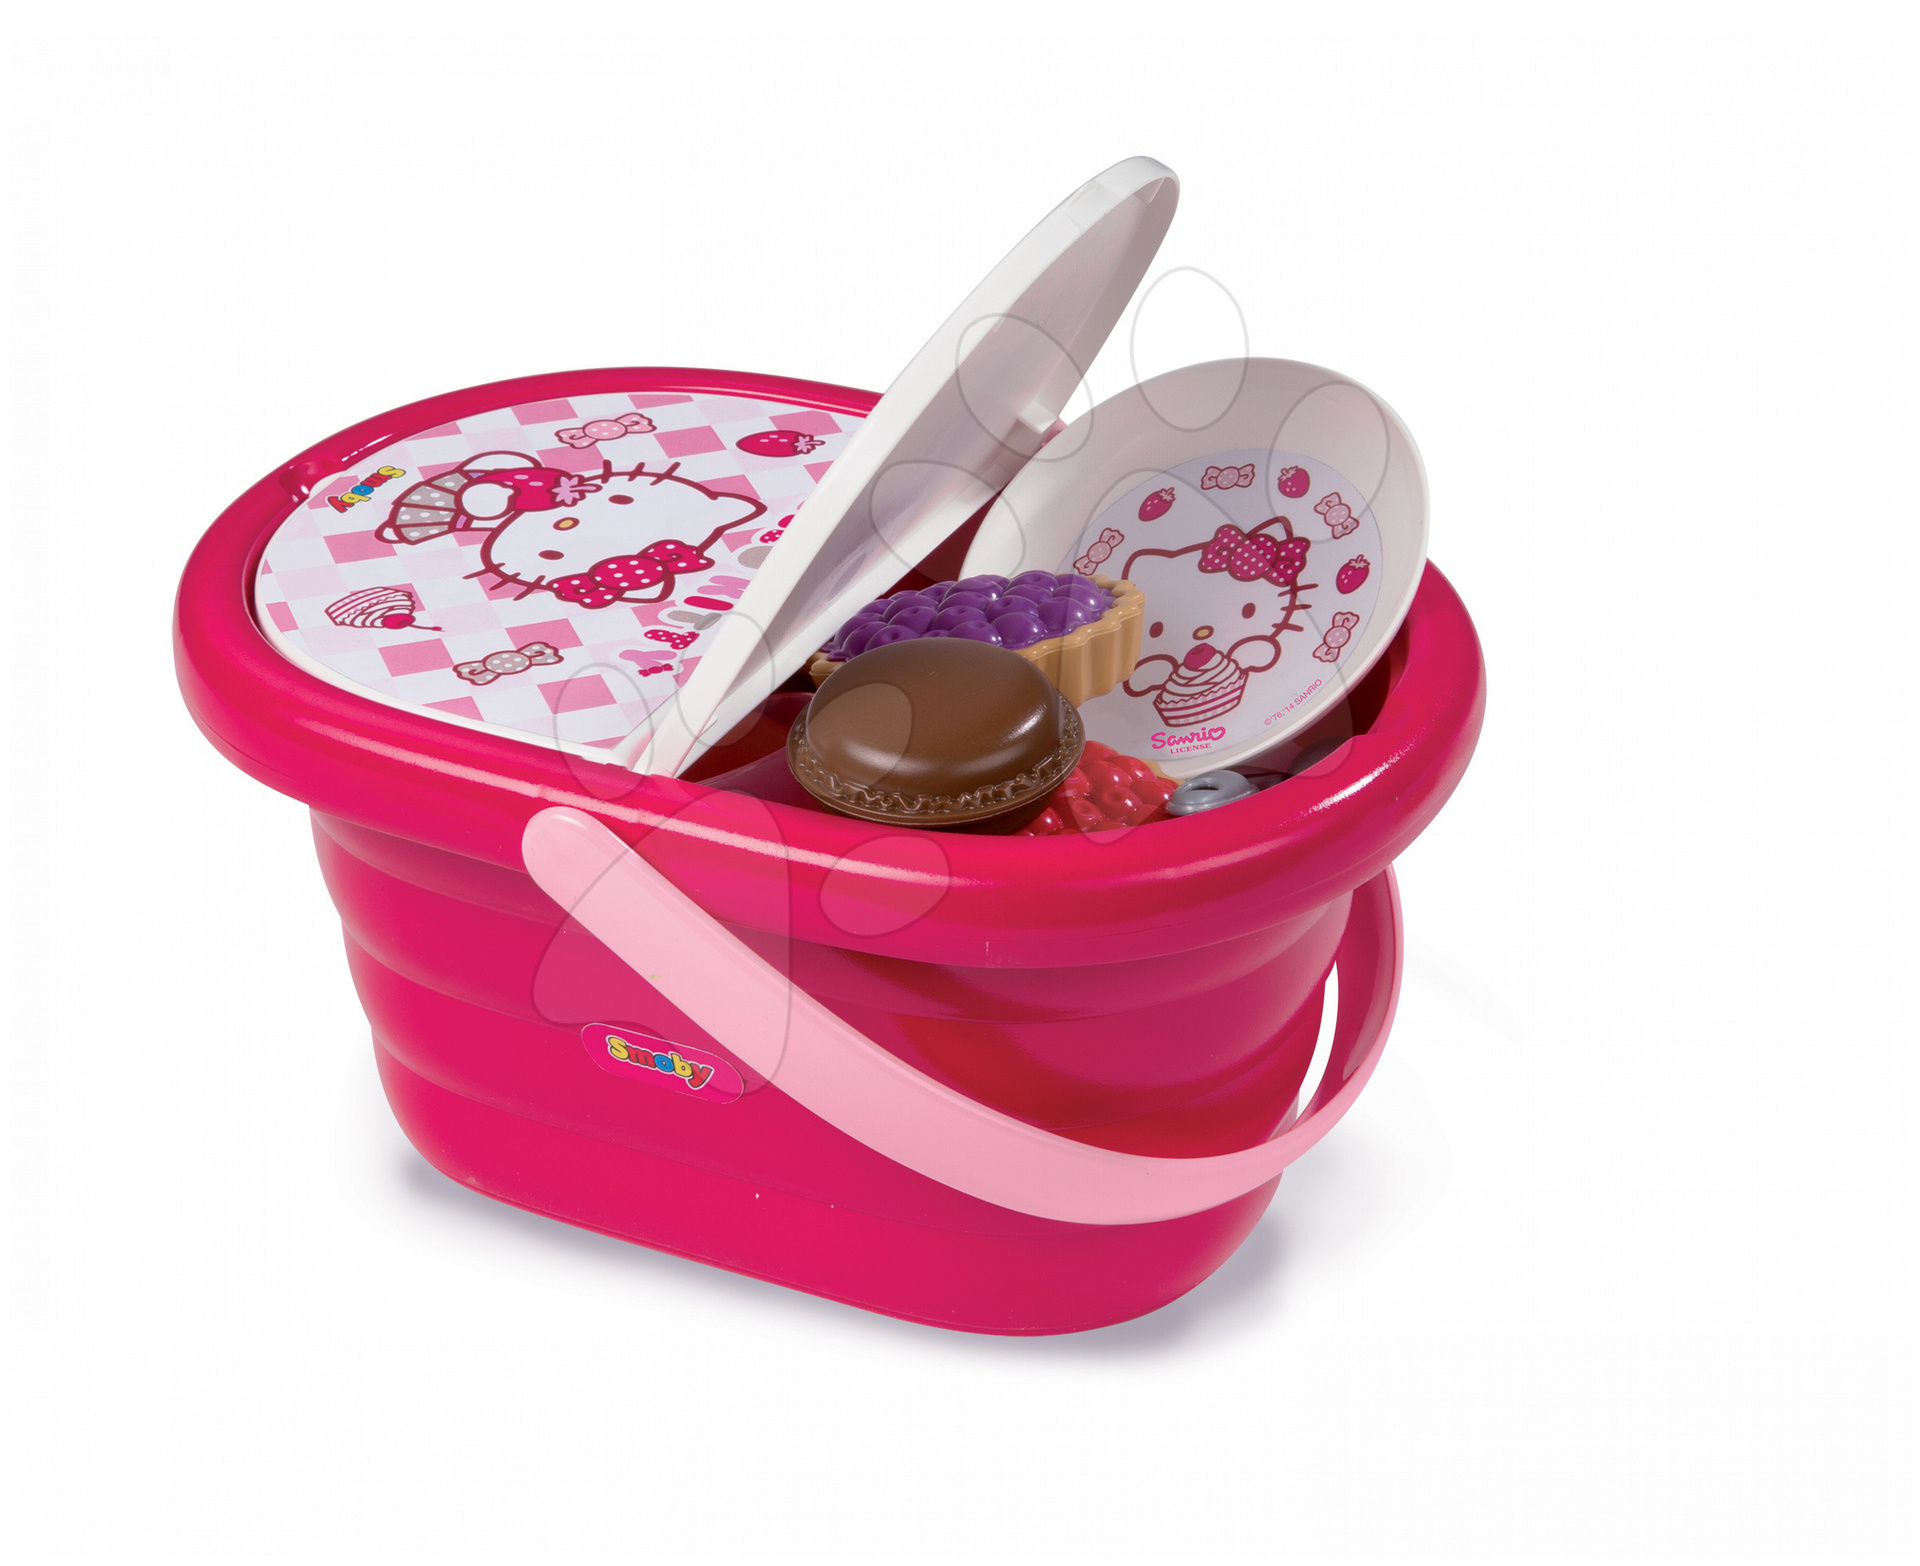 Riadíky a doplnky kuchynky - Piknikový košík Hello Kitty Smoby s 24 doplnkami tmavoružový